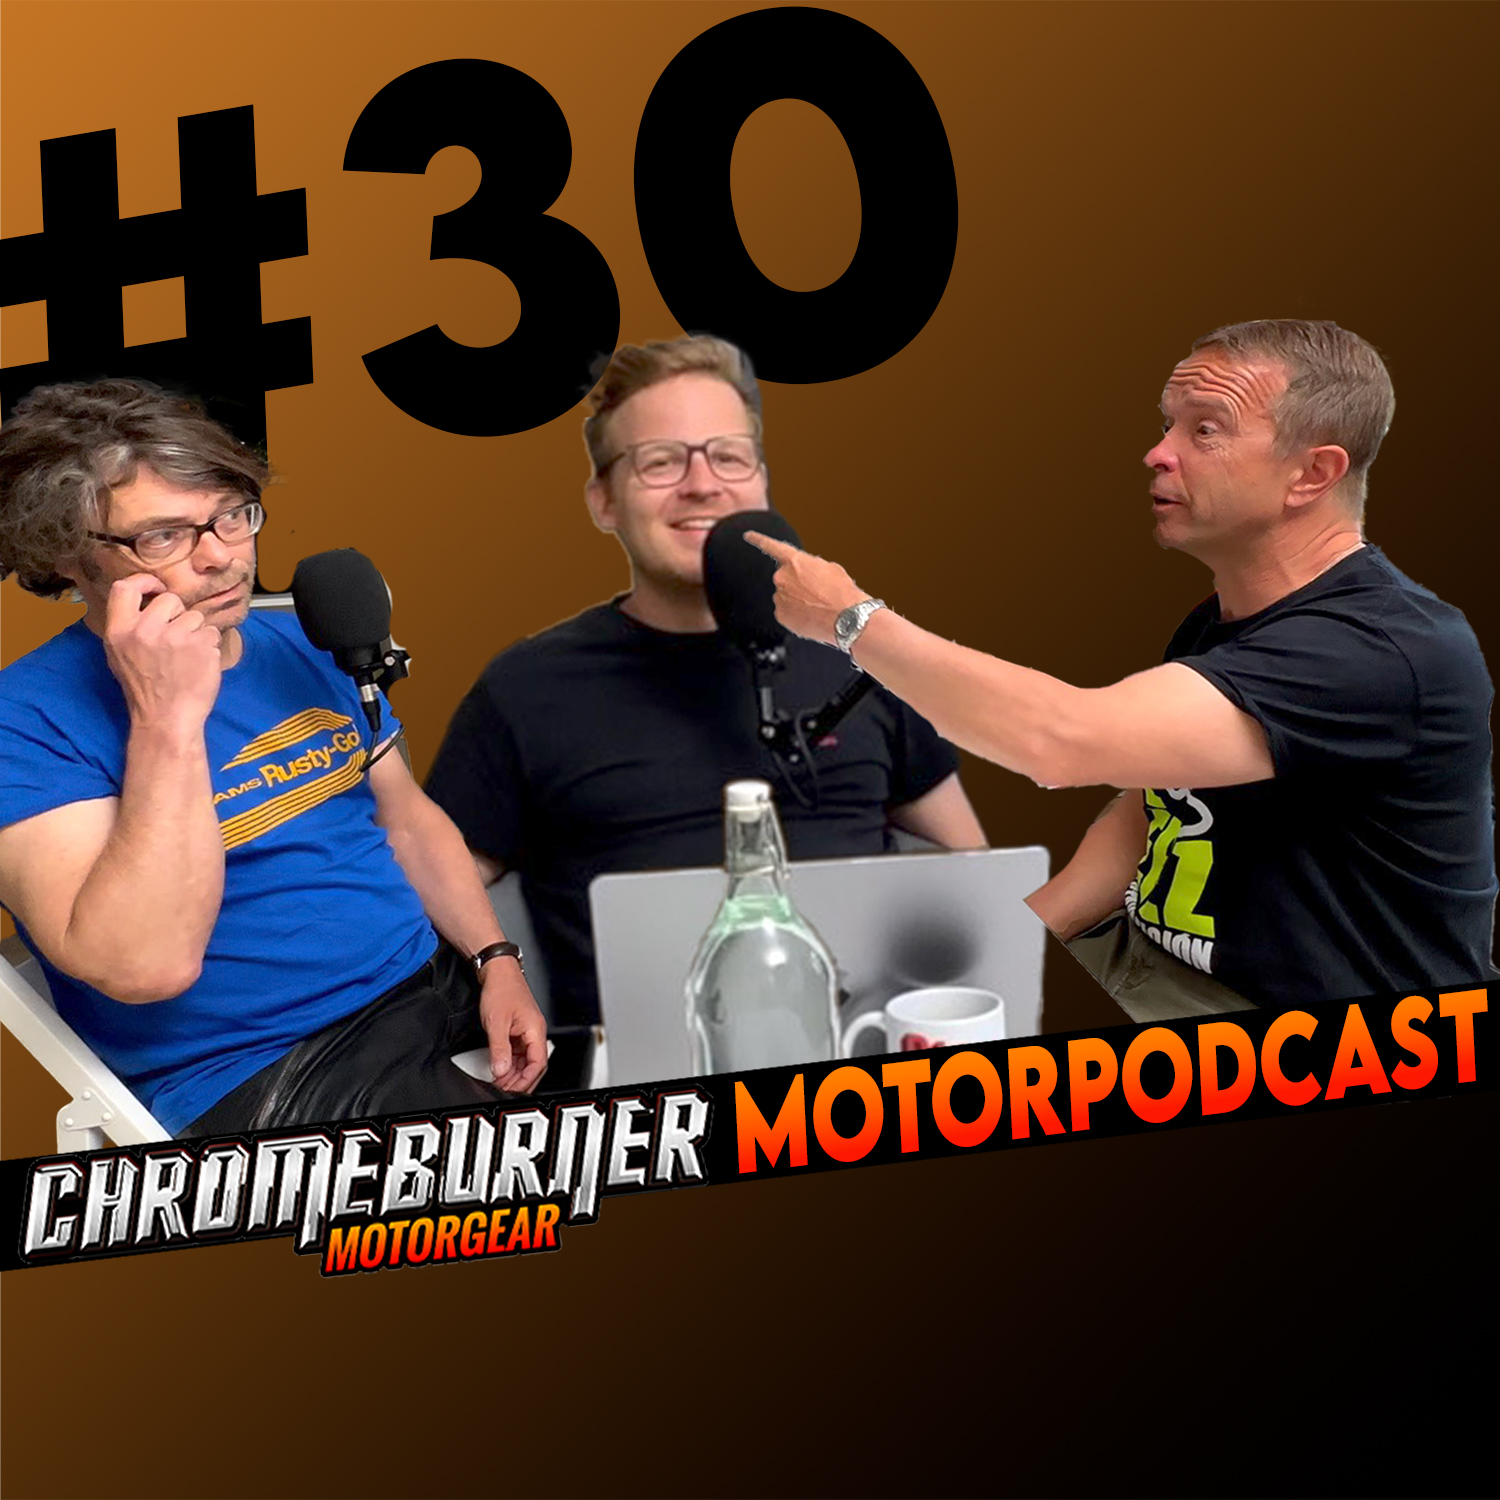 ChromeBurner MotorPodcast #30: Wij komen uit de podcast!